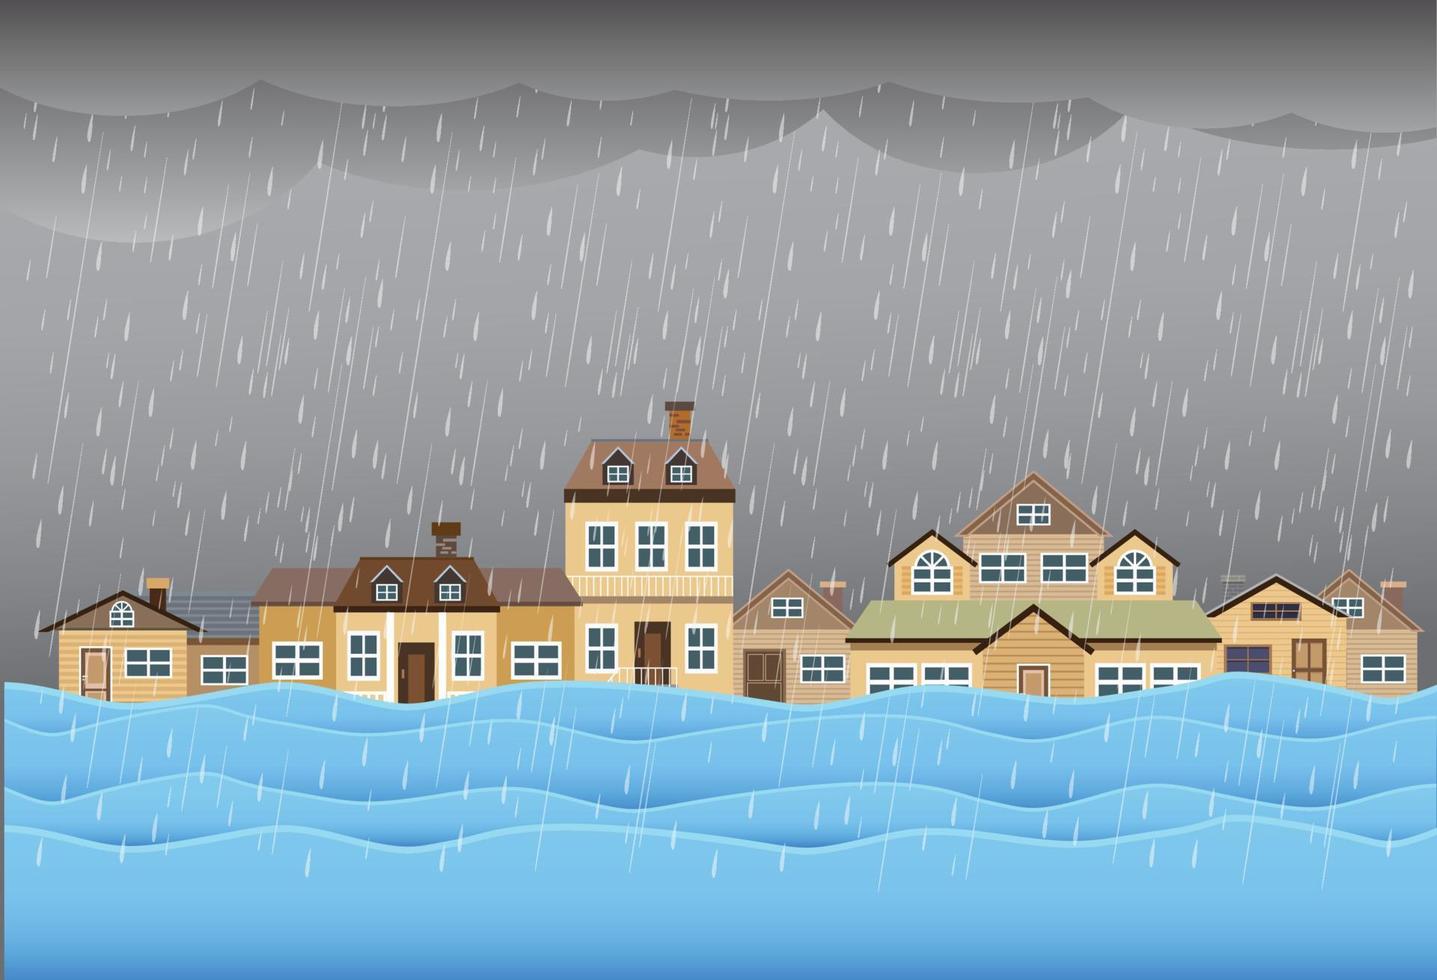 Naturkatastrophe mit Haus überschwemmen, starker Regen und Sturm, Schaden mit Haus, Wolken und Regen, Überschwemmungswasser in der Stadt, überflutetes Haus. vektor